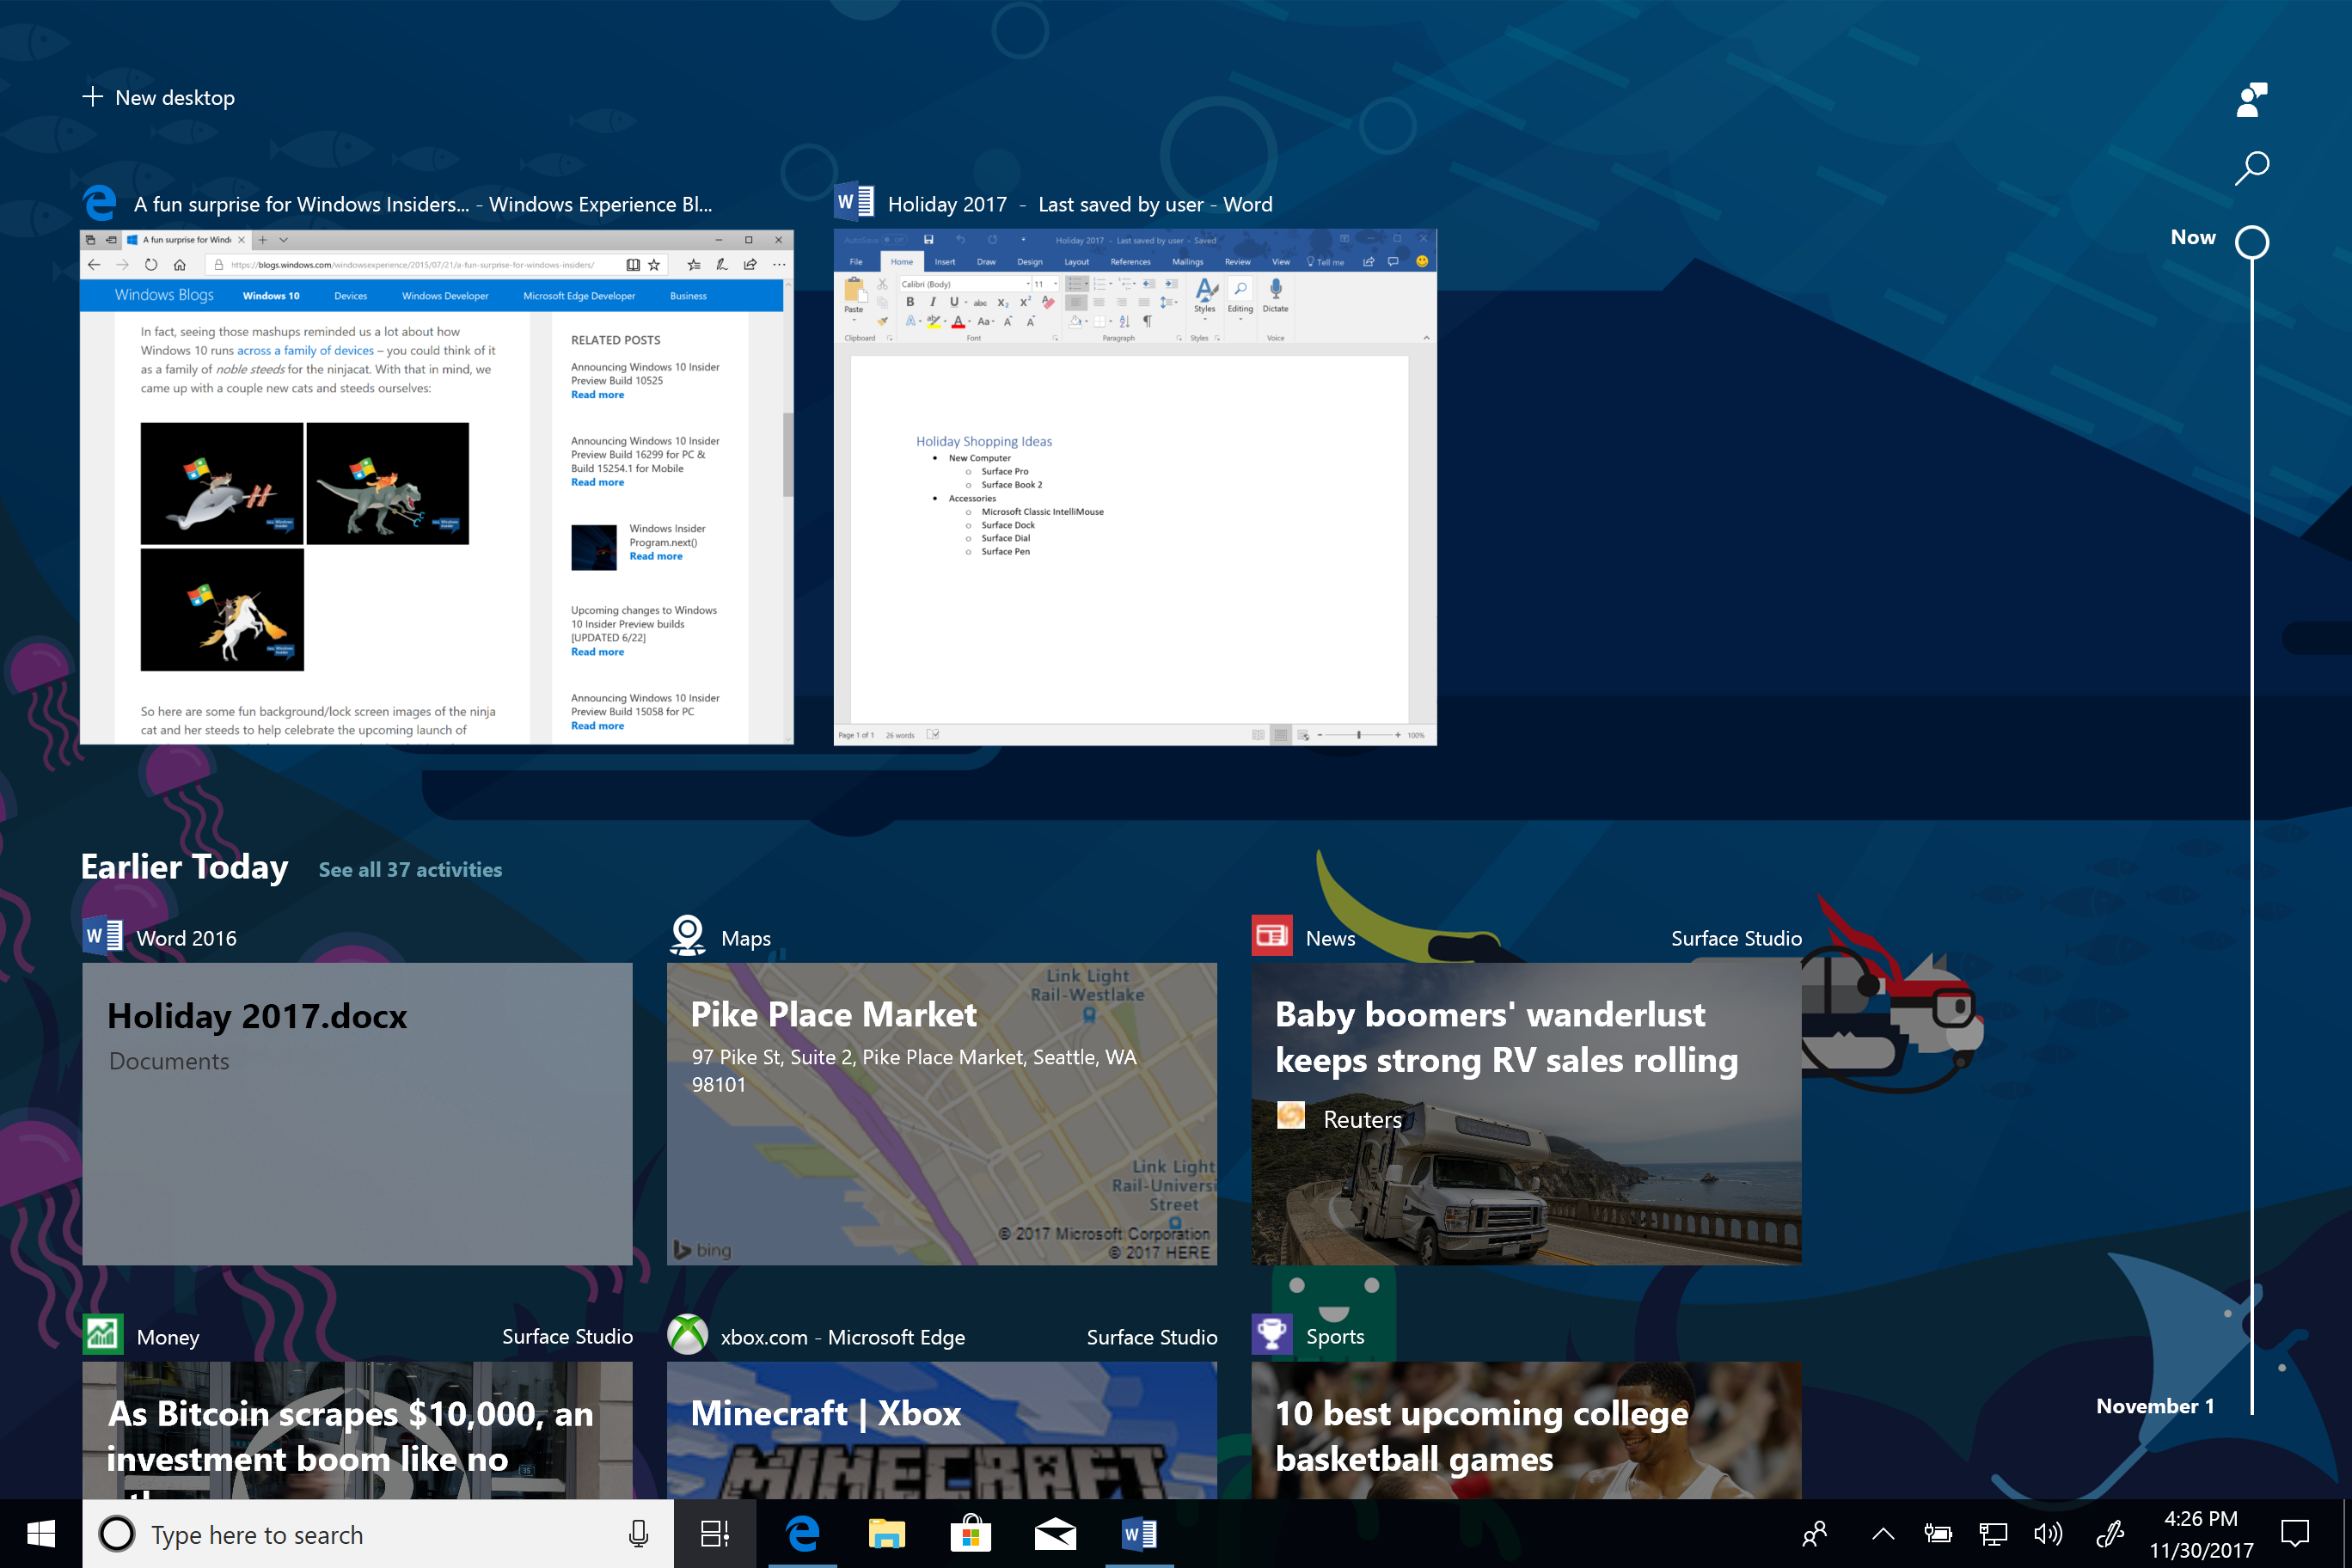 Prévia do Windows 10 traz linha do tempo e organiza apps em abas